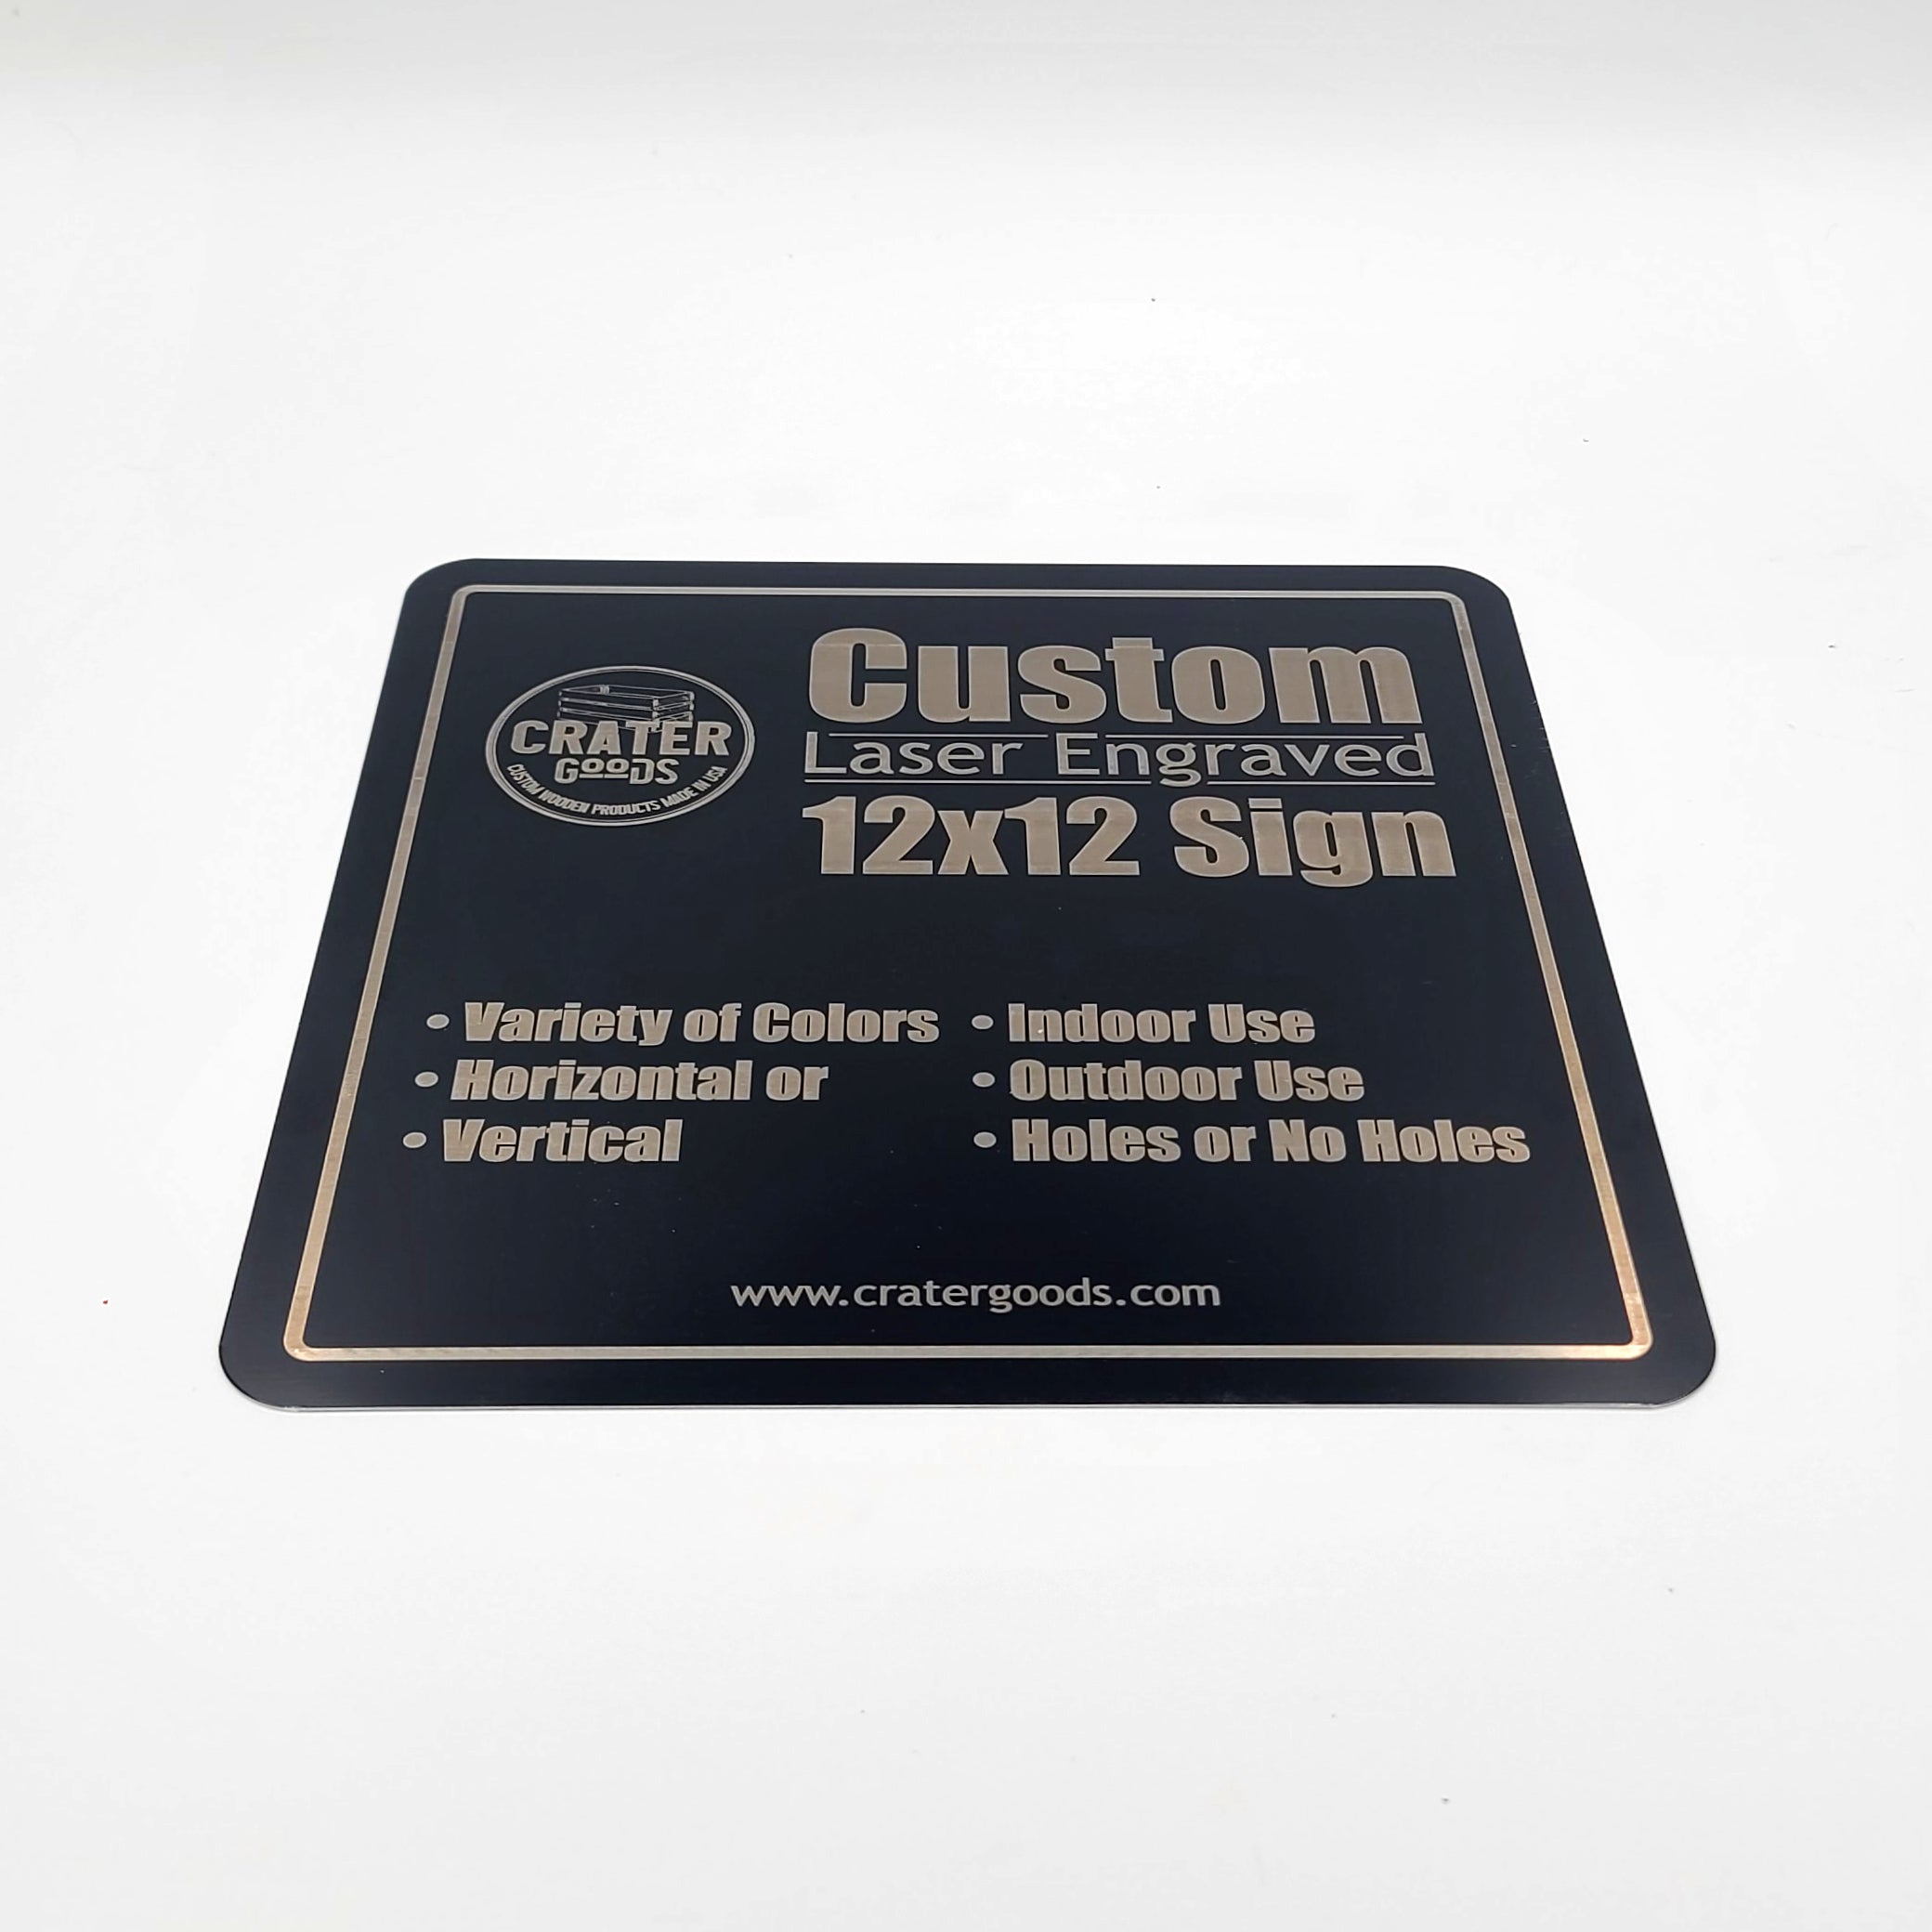 Custom Laser Engraved Metal Sign